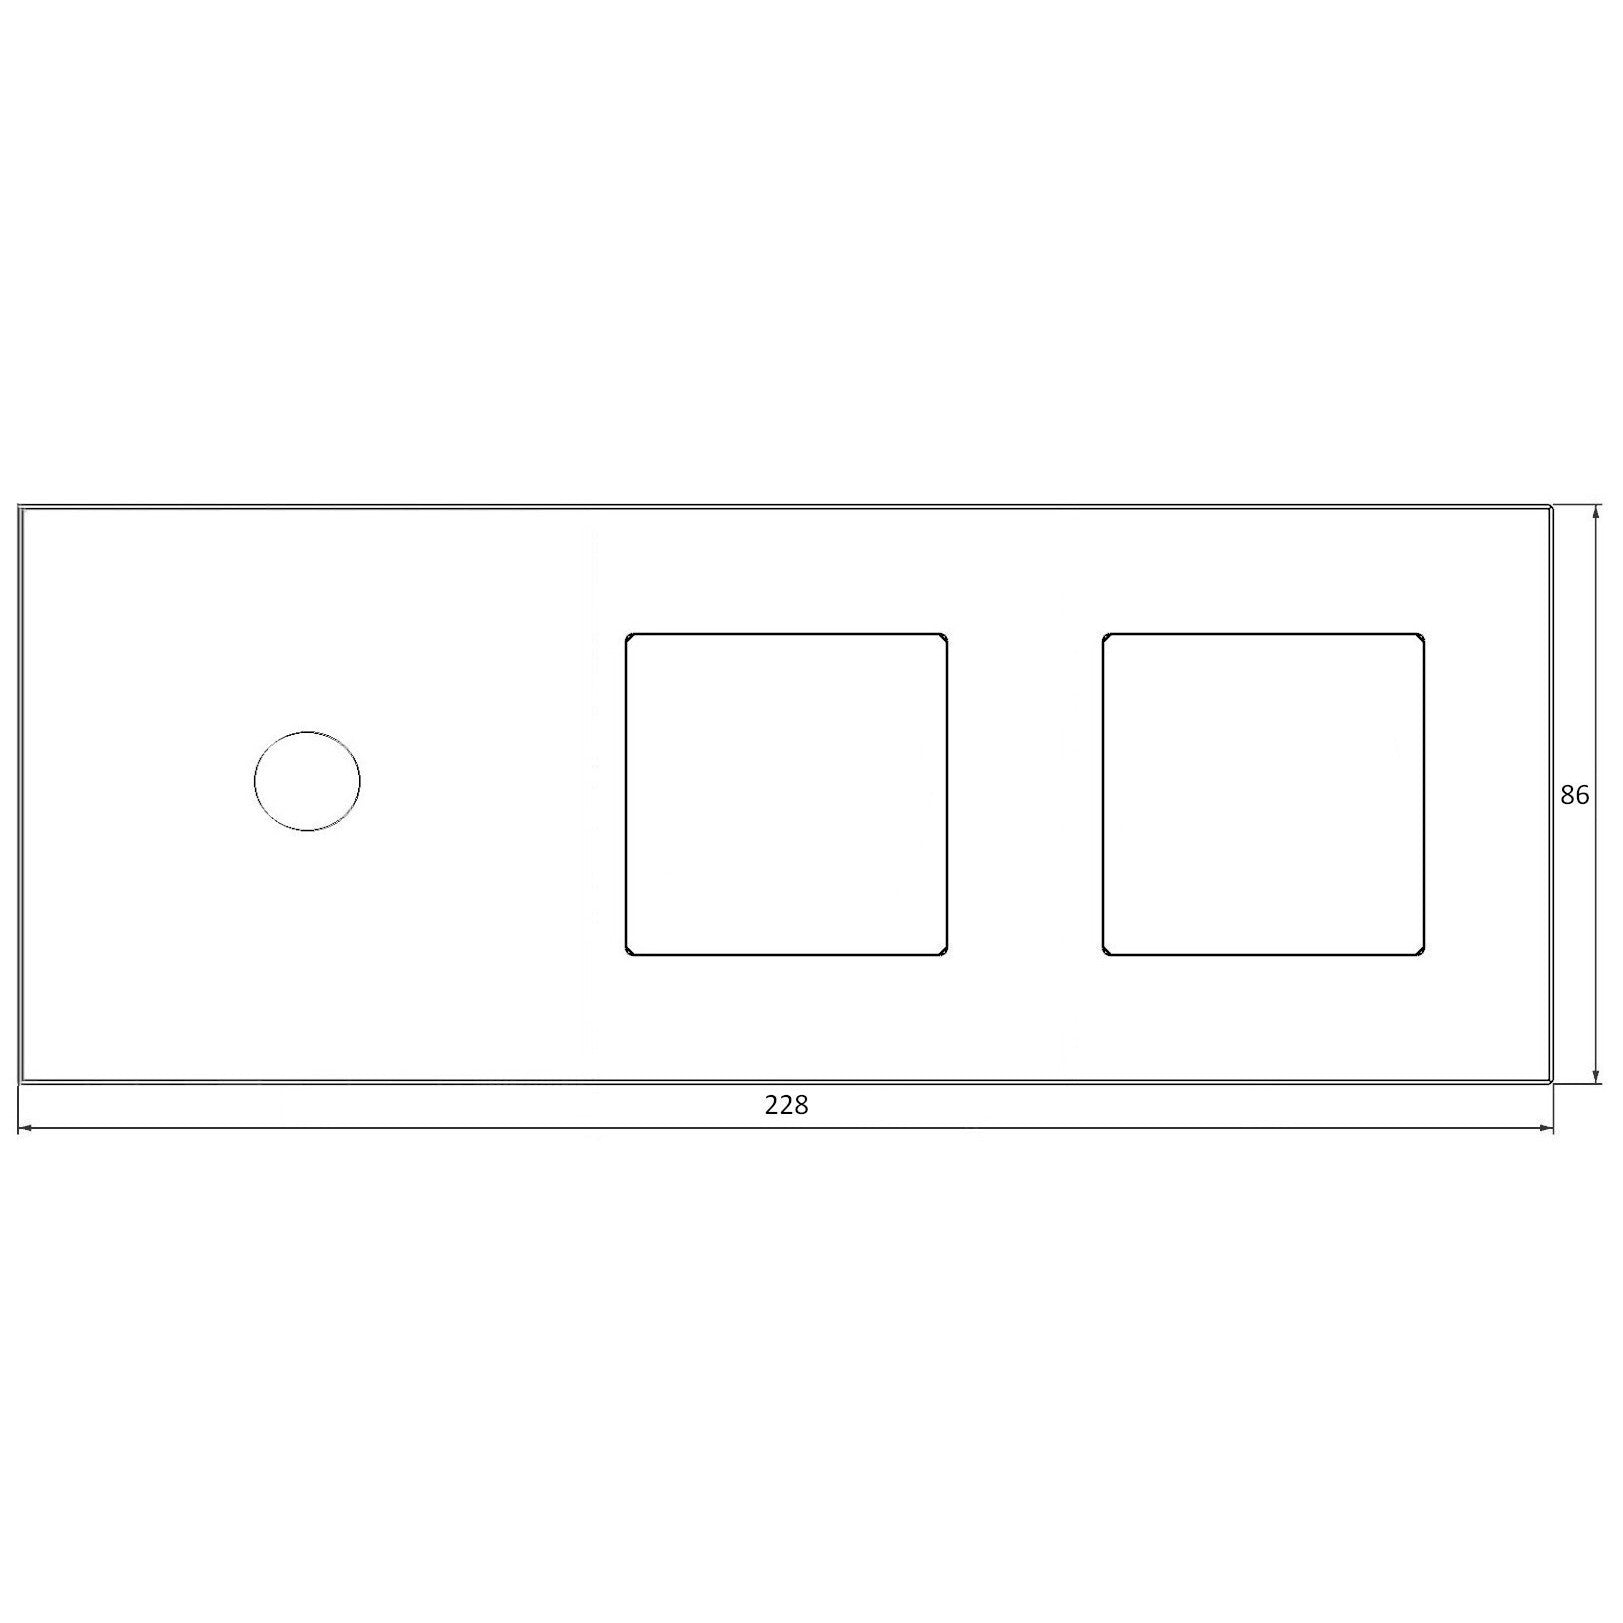 Panel de vidrio de 2 módulos y 2 marcos blanco